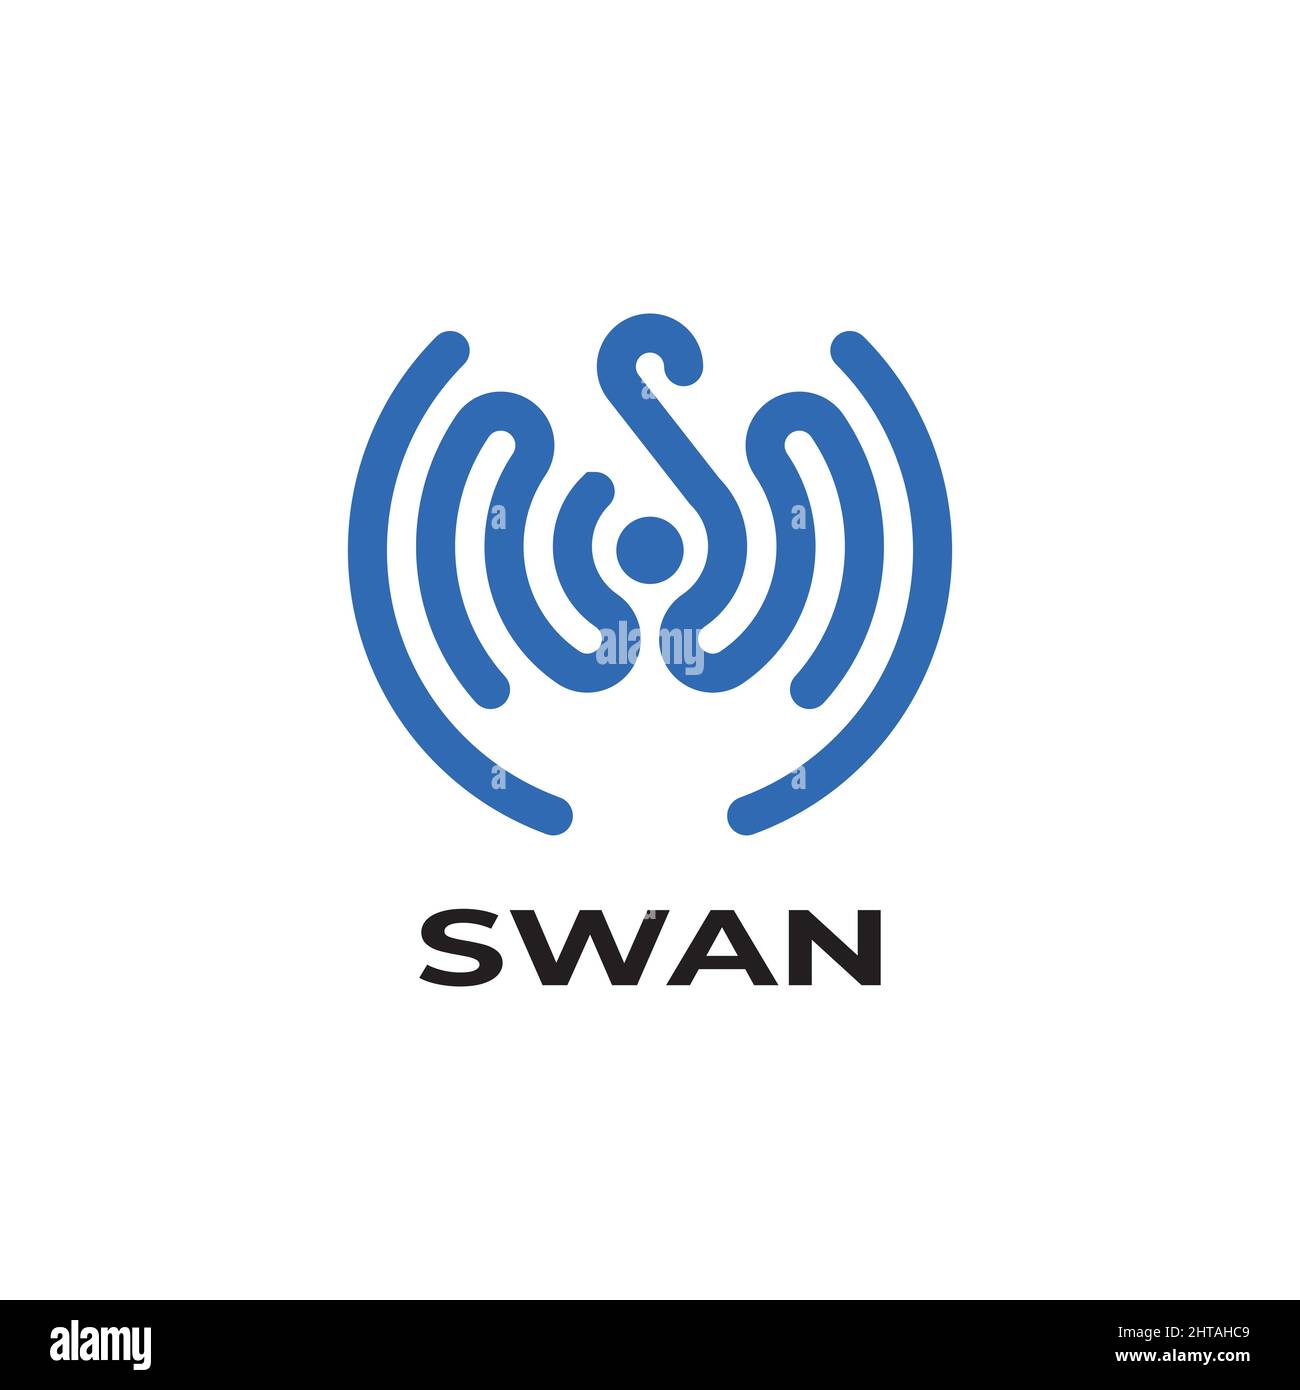 Letter S swan logo design illustration vector template Stock Vector